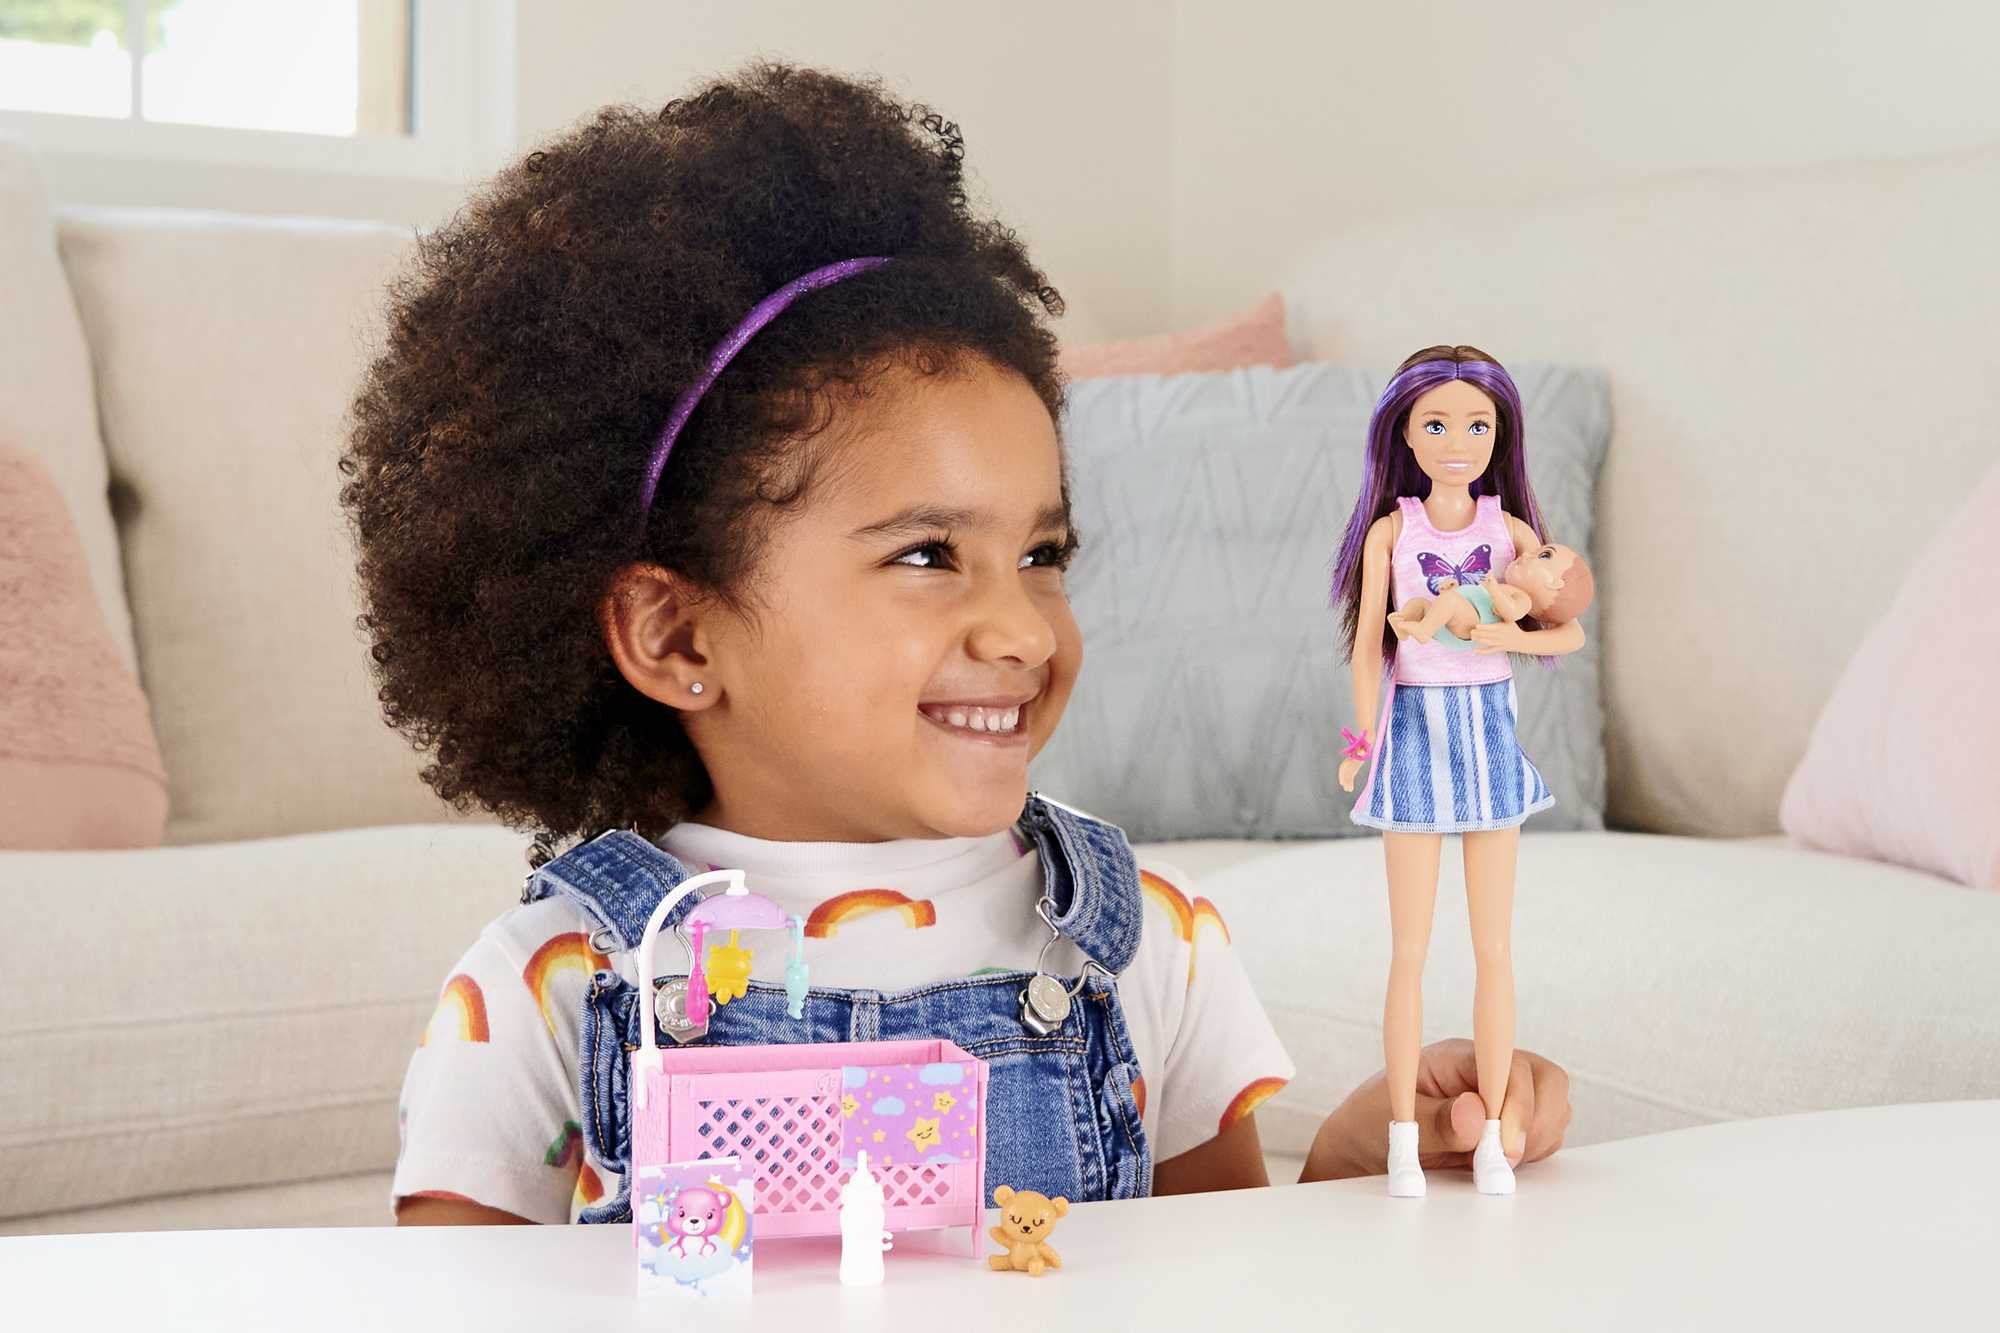 Coffret petite fille et voiture! Barbie Skipper Baby-Sitter avec Poupée  Enfant, Voiture pour Enfant, Feu Tricolore, Cône, Gobelet et Jouet Lion 